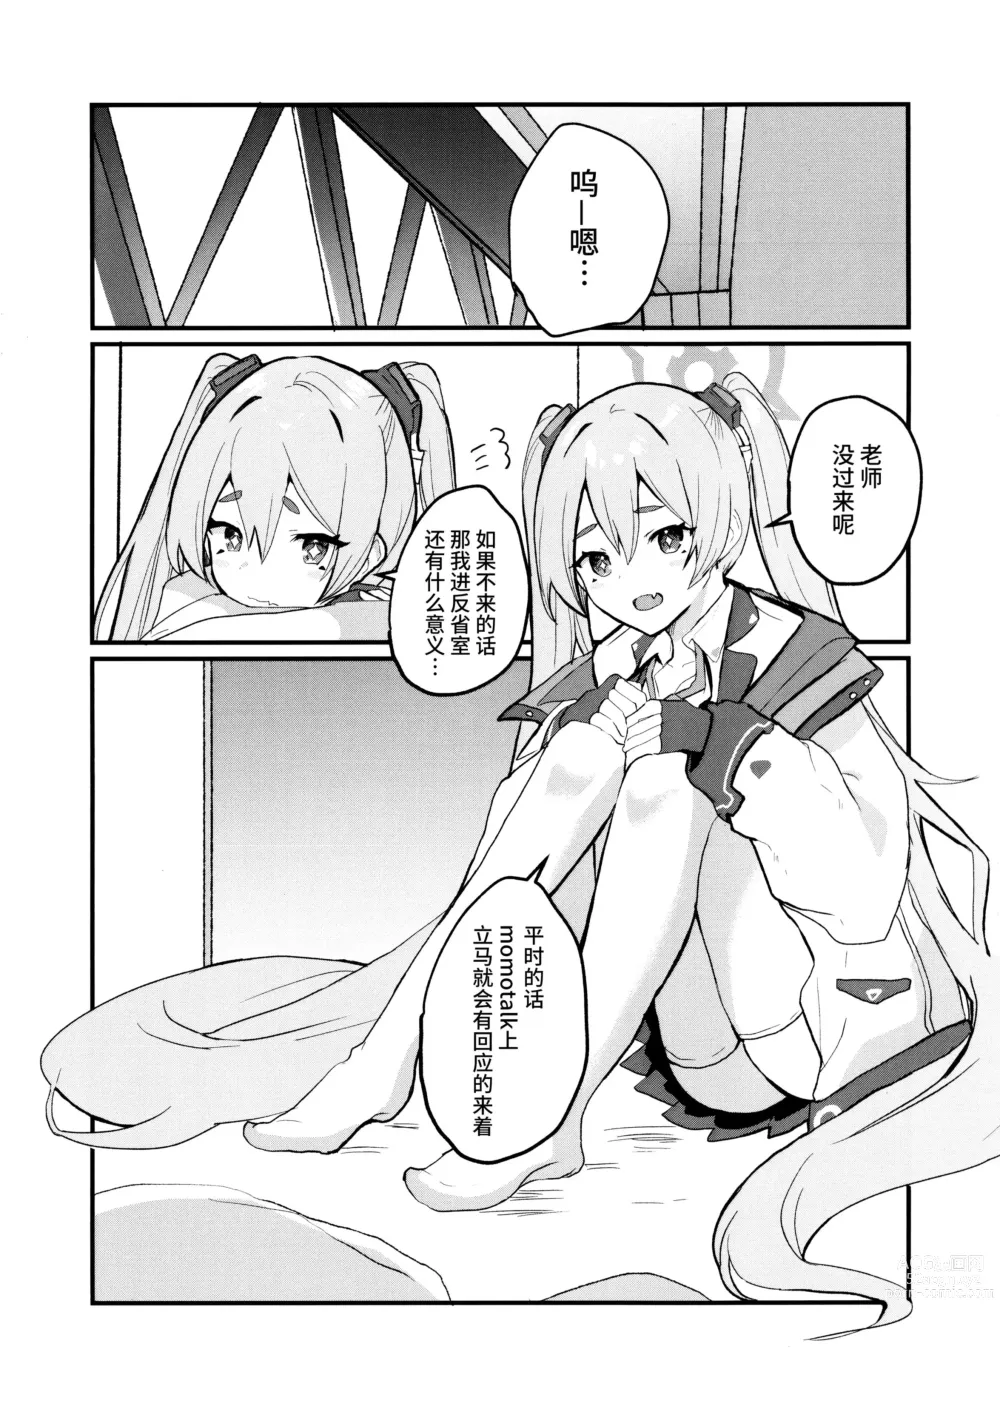 Page 4 of doujinshi 这样子的小雪感觉如何呀?!